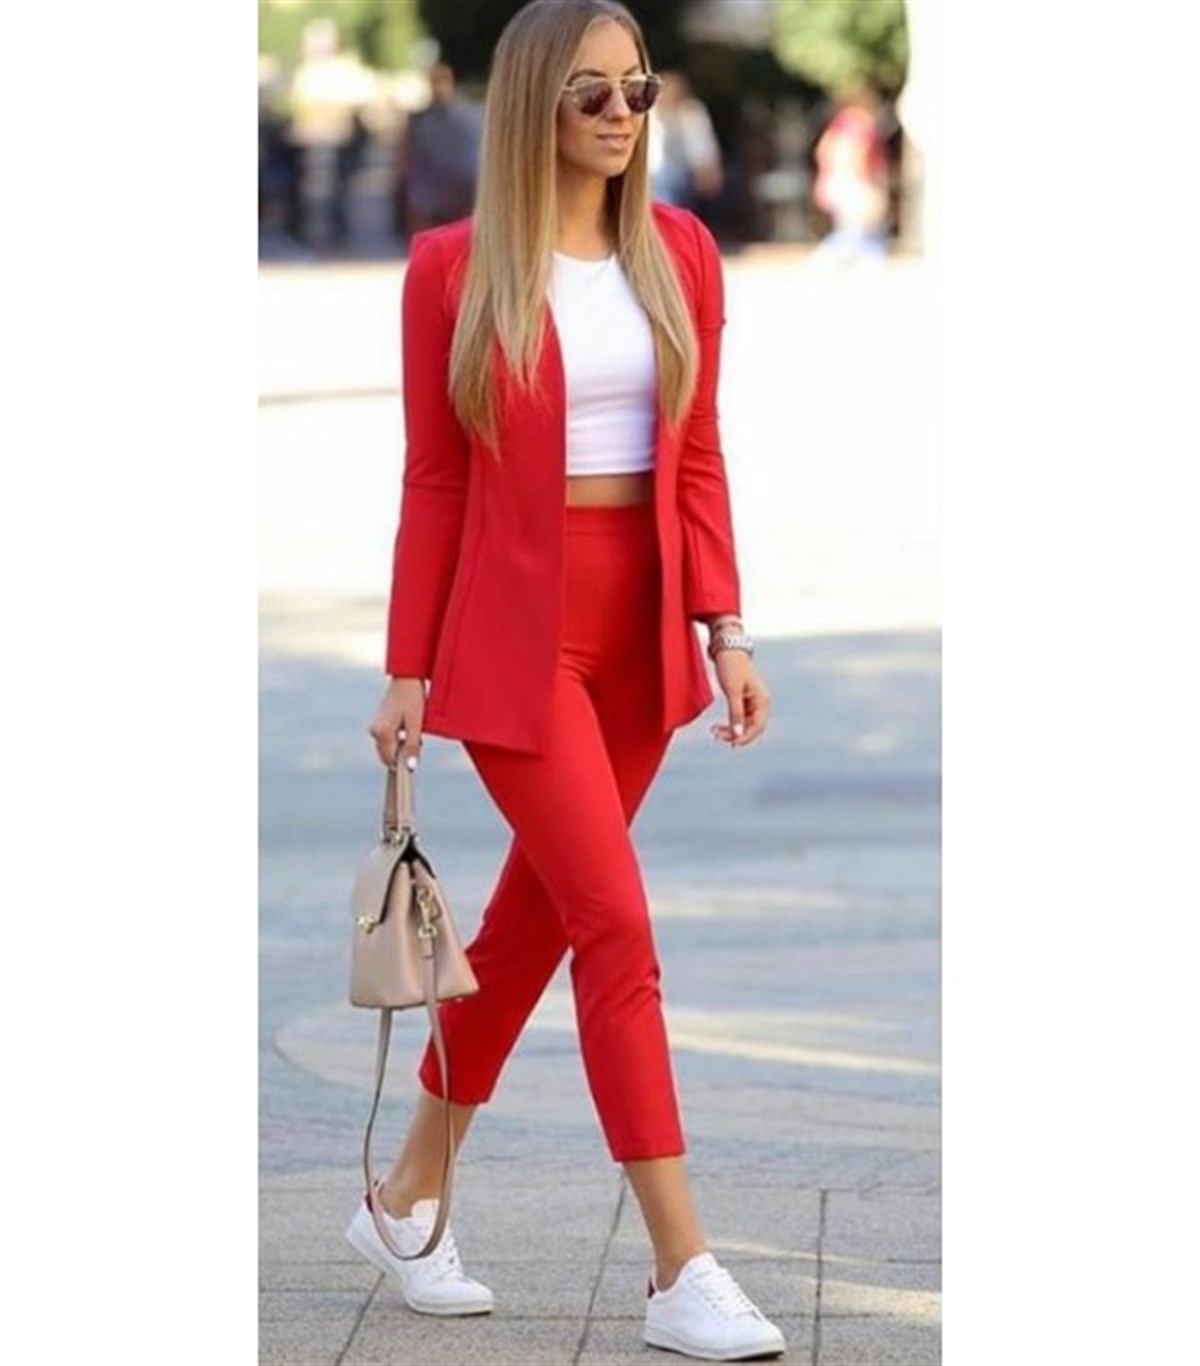 Atlas kumaş Ceket Pantolon Kırmızı Bayan Takım